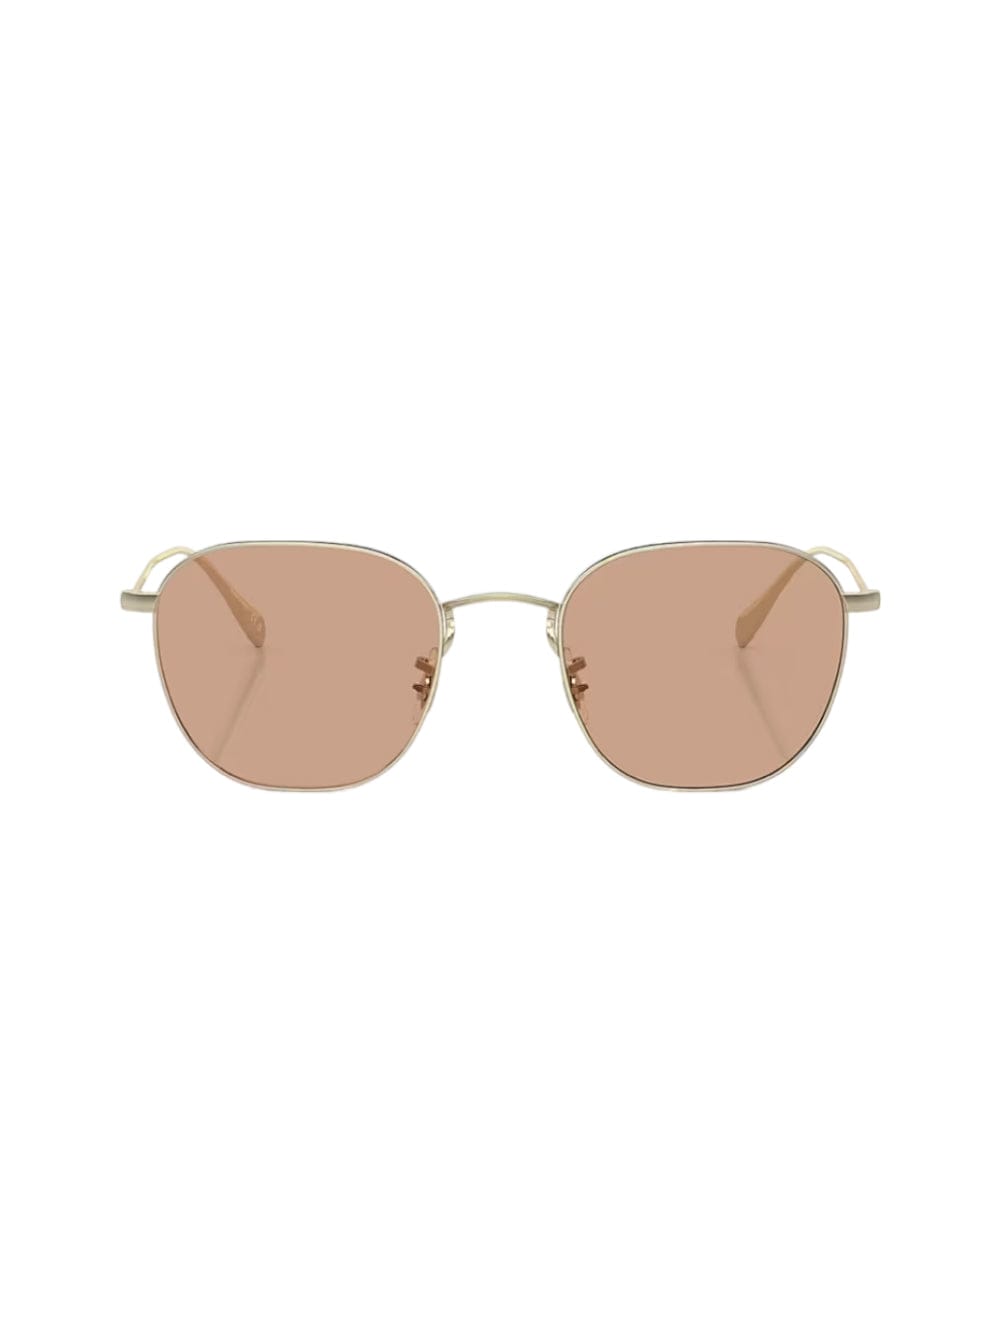 Shop Oliver Peoples Clyne - Gold Sunglasses